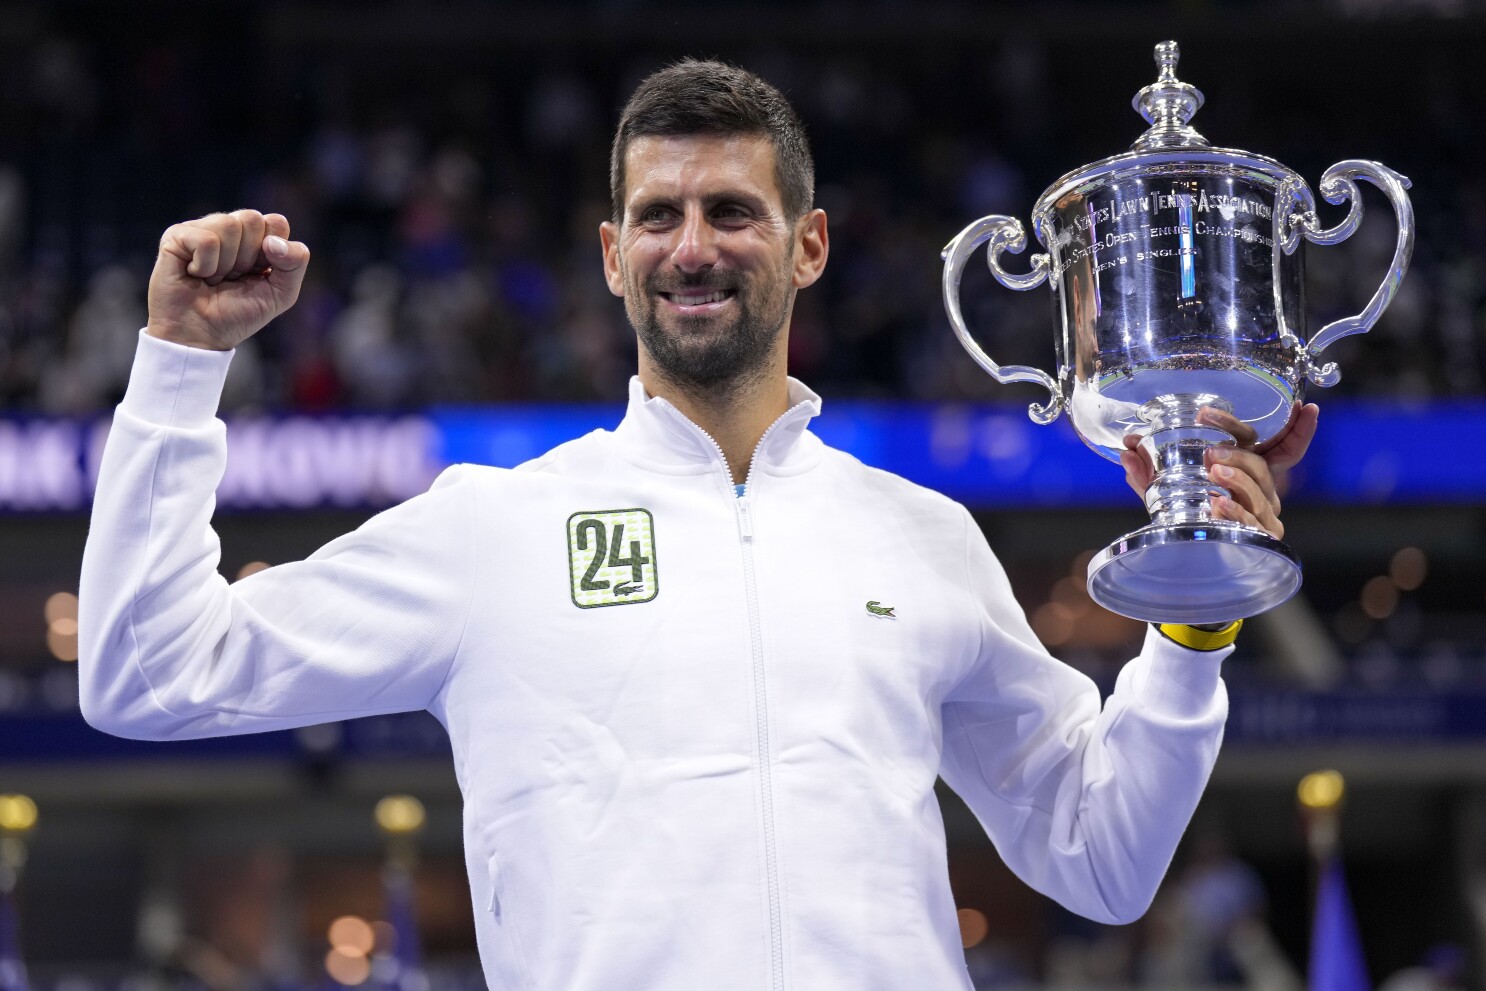 The U.S. Open Men's Singles Final We Only Half Expected: Djokovic